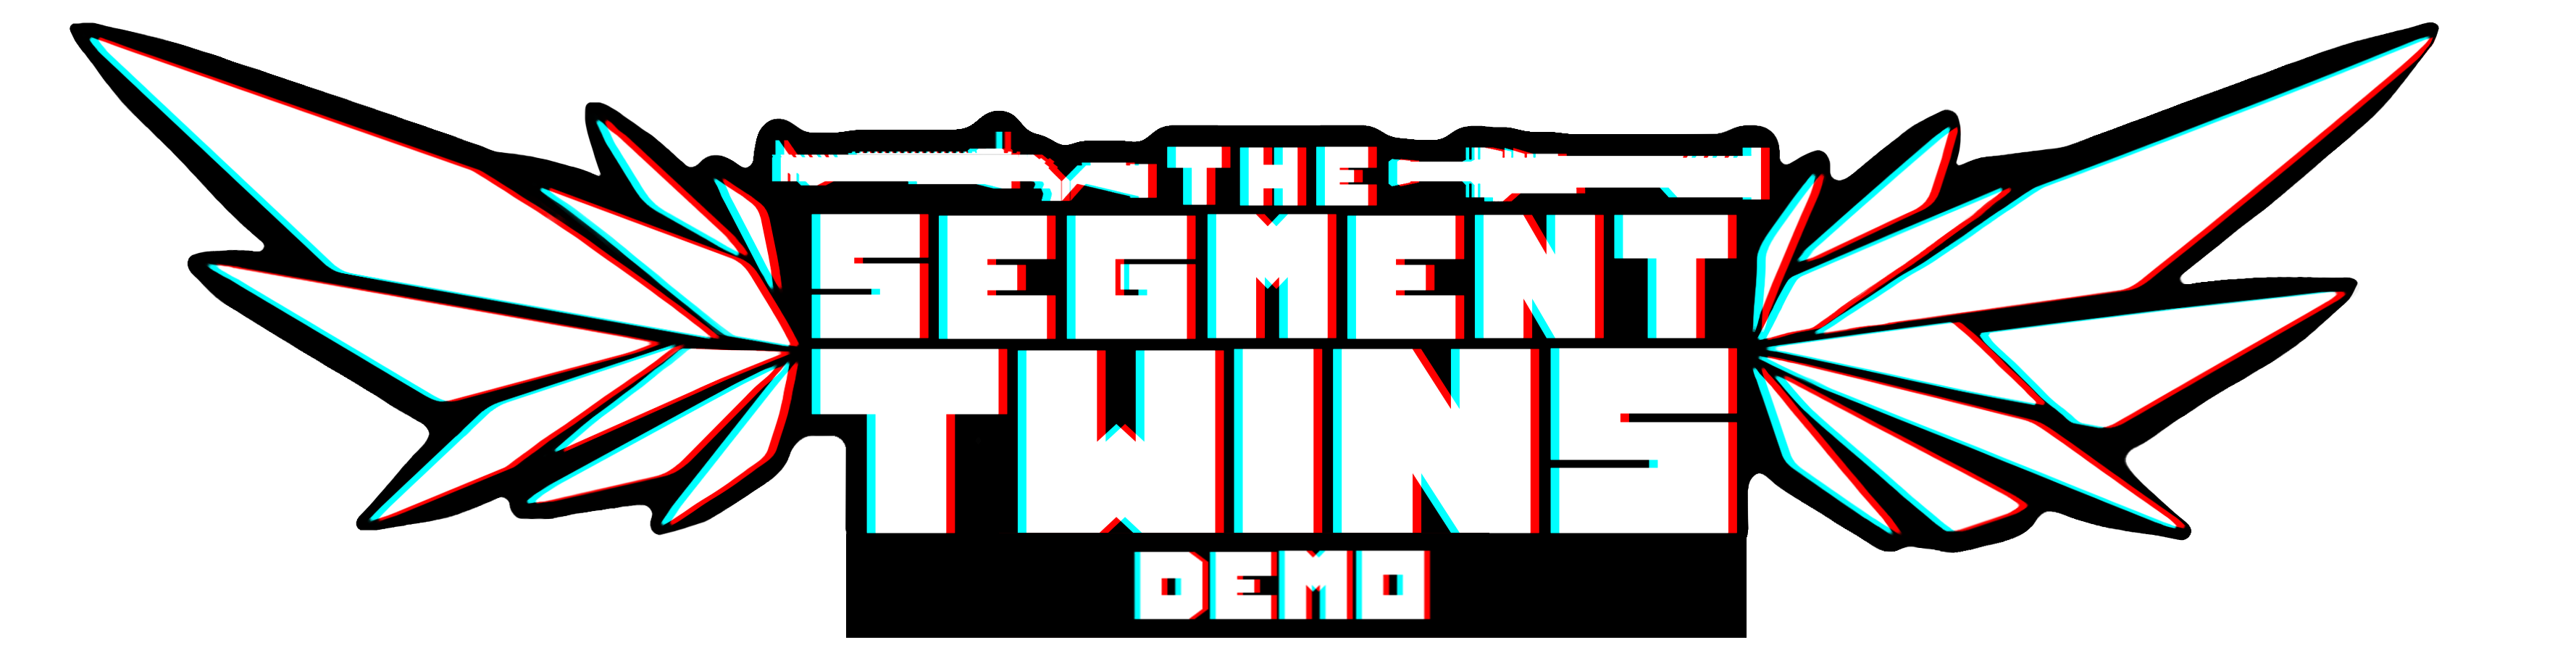 THE SEGMENT TWINS [DEMO]